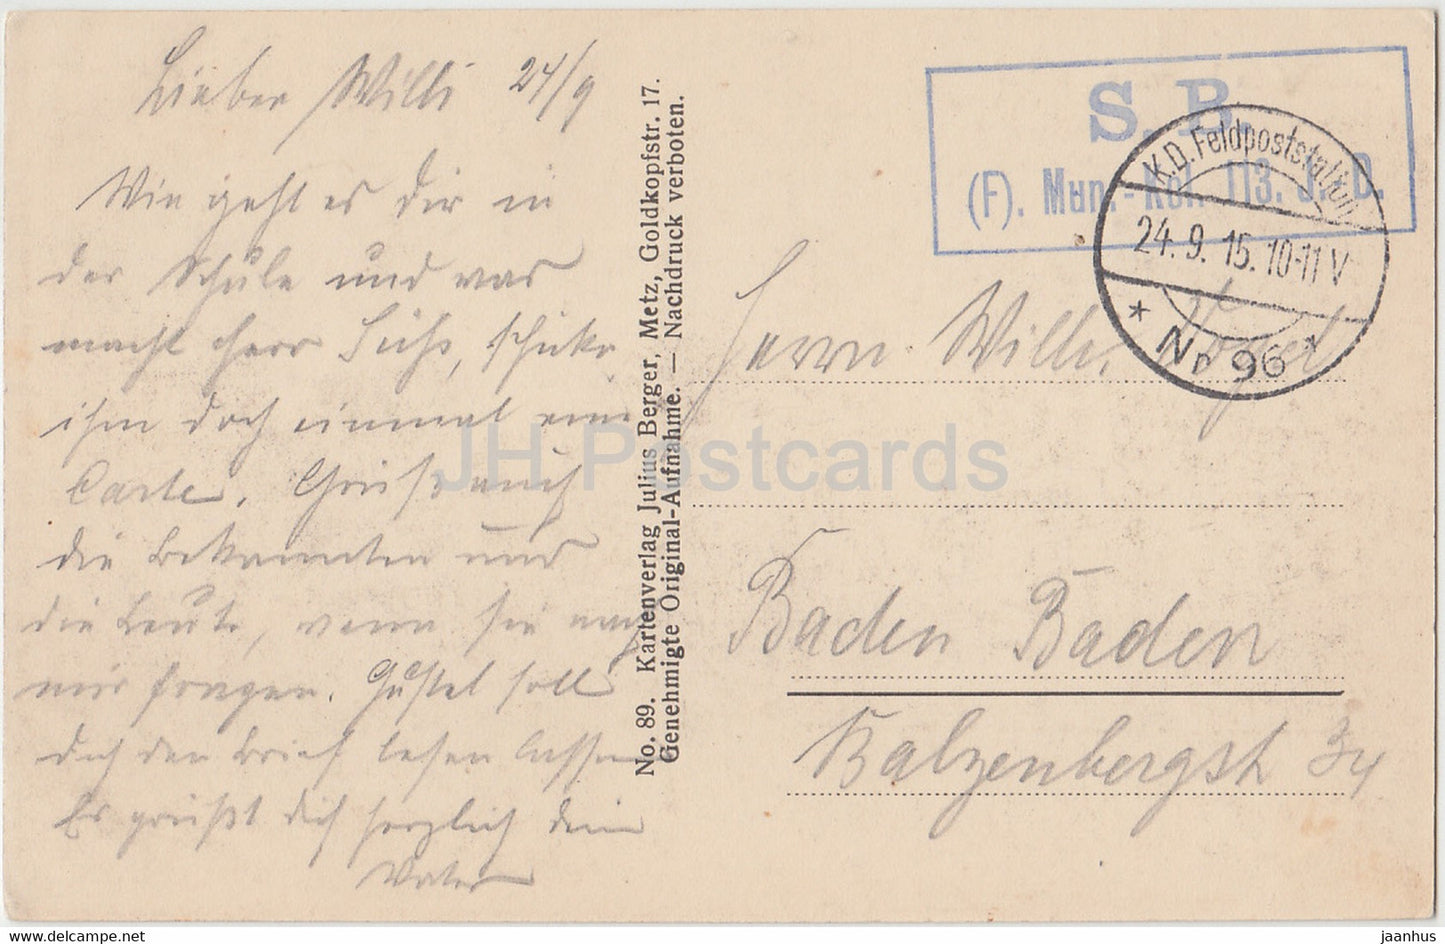 Straße in Harville – 89 – Feldpost – Militär – alte Postkarte – 1915 – Frankreich – gebraucht